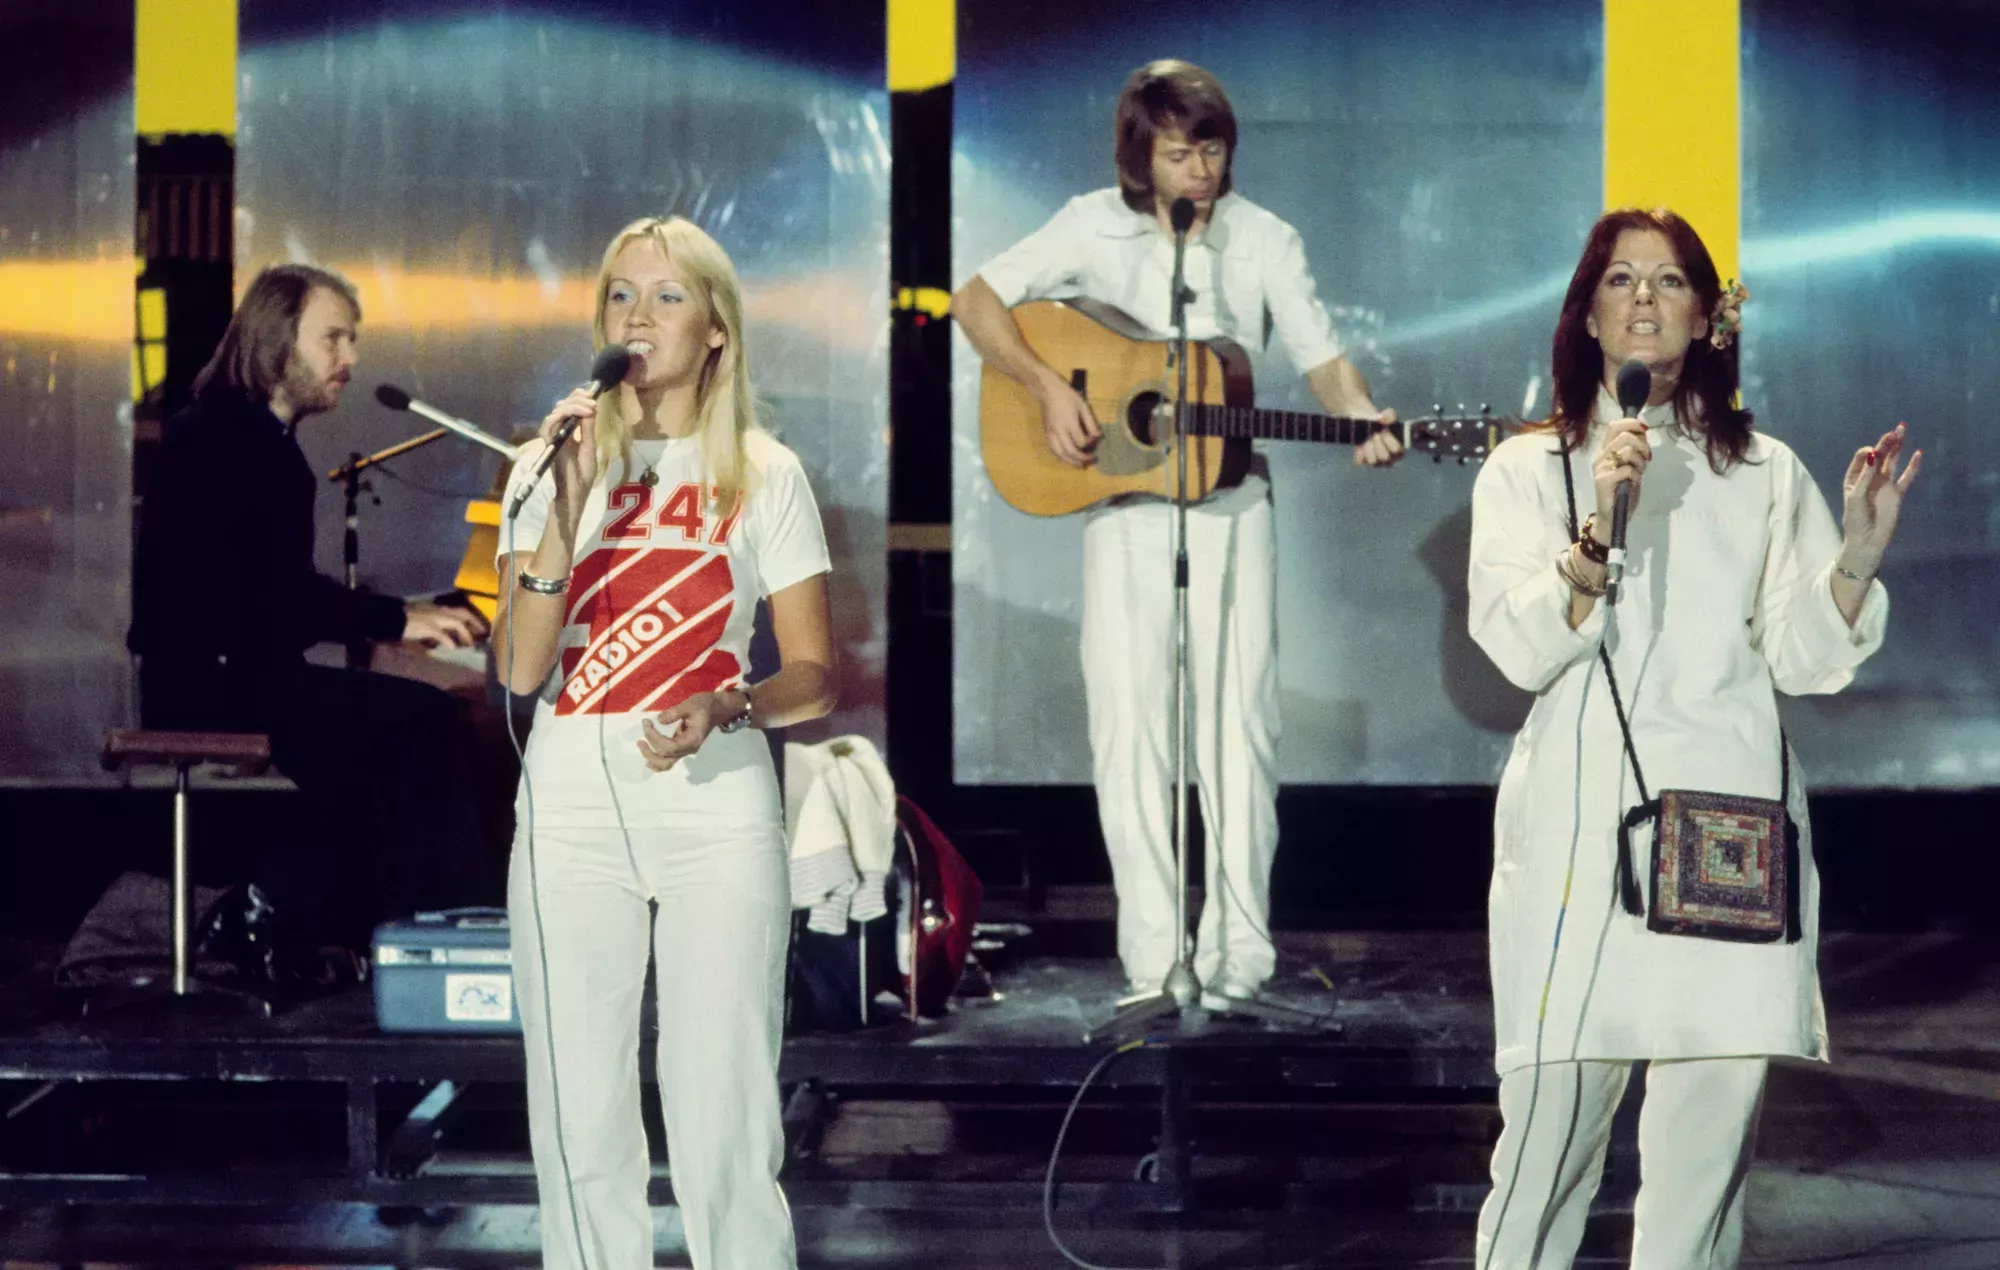 Dos personas mueren tras una caída en un espectáculo de homenaje a ABBA en Suecia